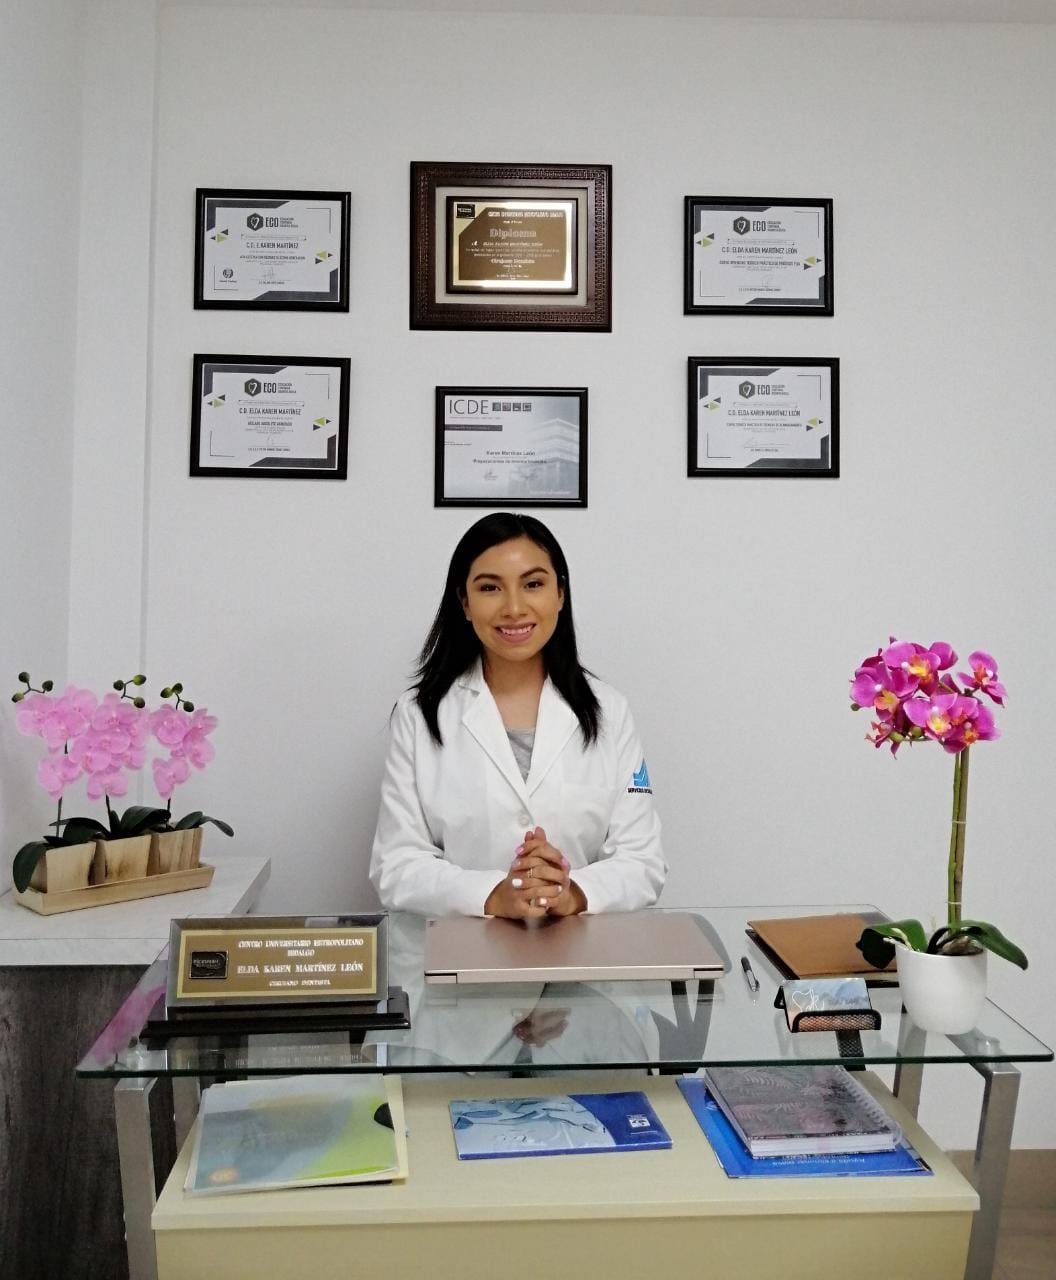 Dra. E. Karen Martínez León (Cirujano Dentista)